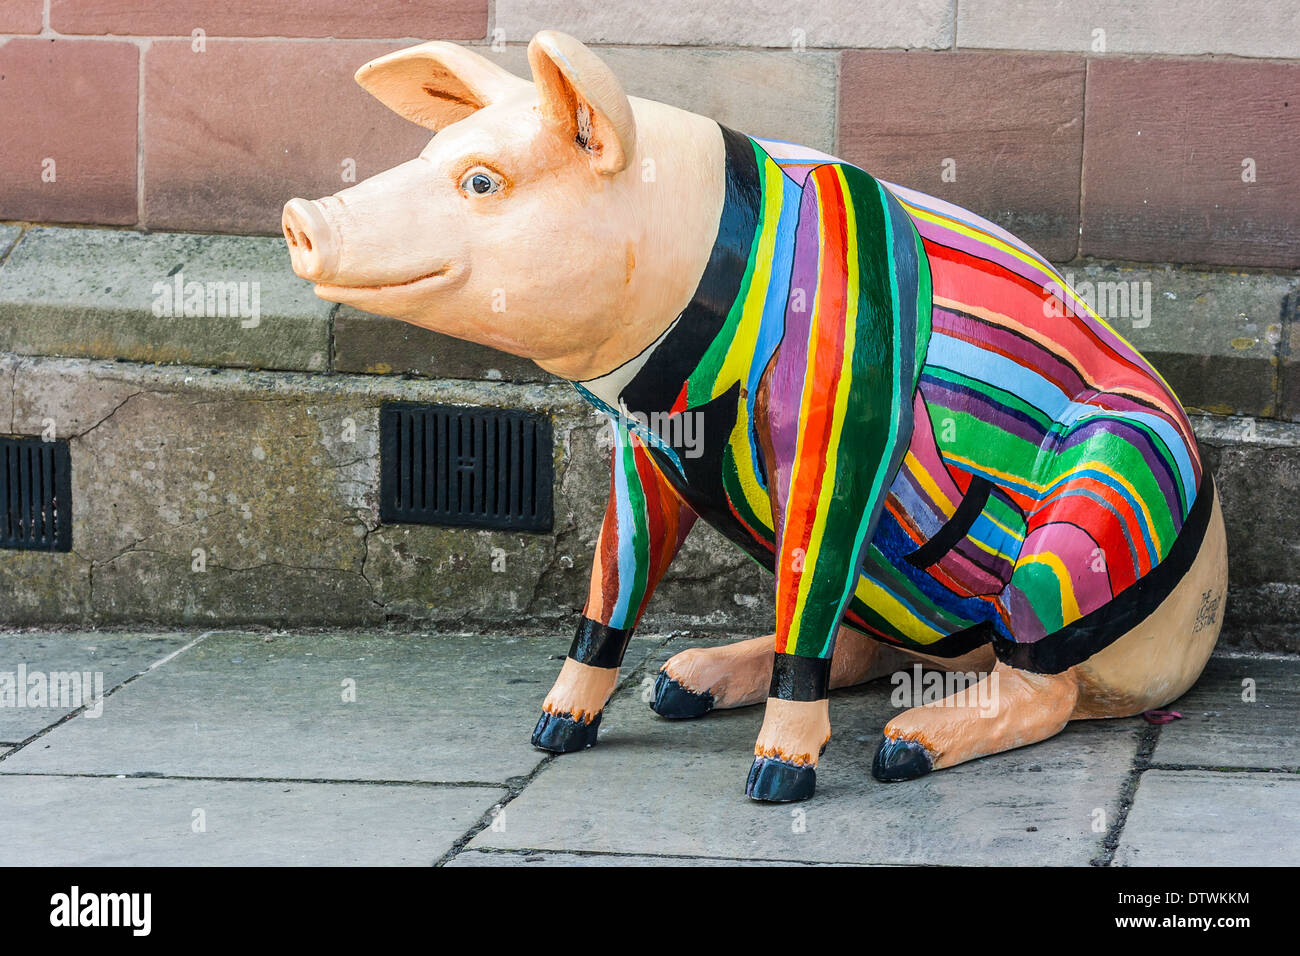 Gros cochon en fibre de porter veste multicolores dehors, sur le trottoir dans le cadre de l'Angleterre .Lichfield Lichfield Festival. Banque D'Images